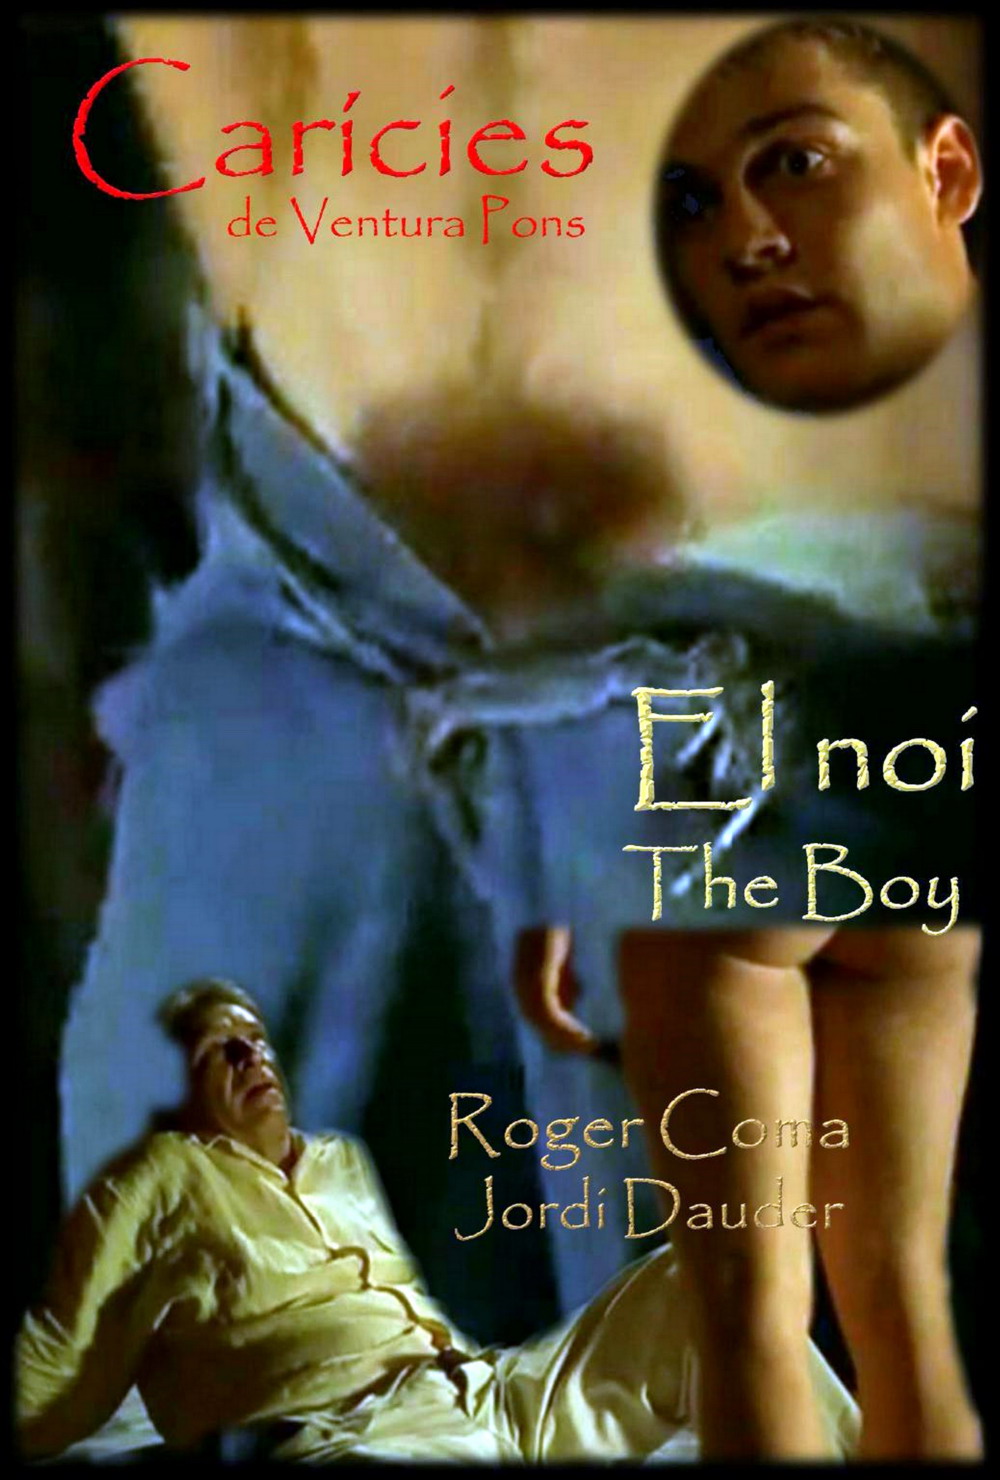 El noi (1998) The Boy